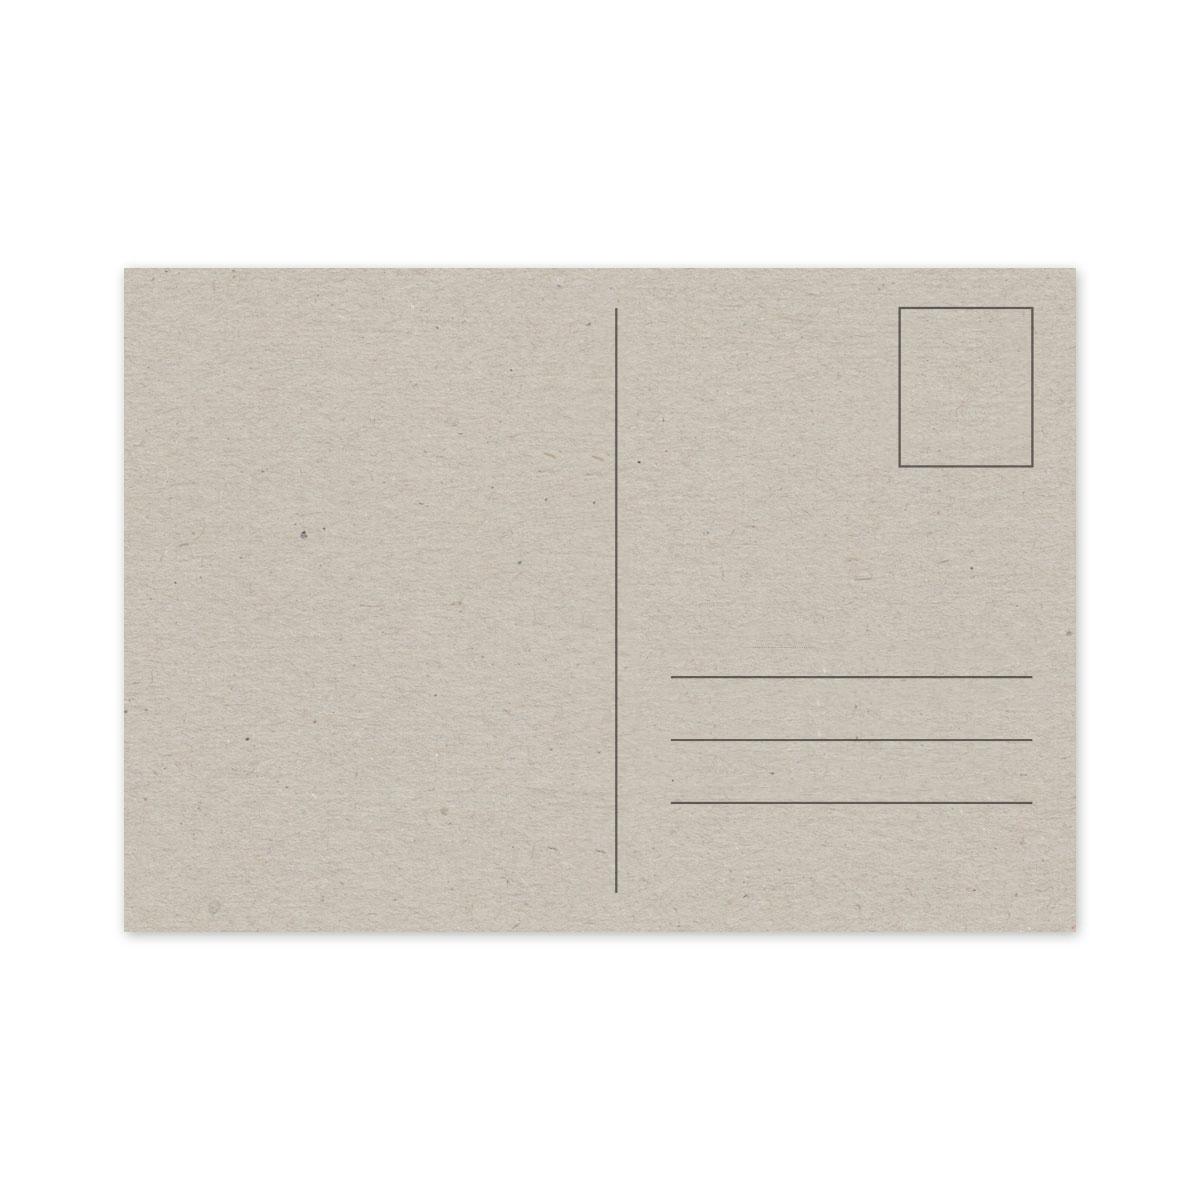 sandgraue Postkarte DIN A6 mit Postkartenvordruck (Graupappe ca. 350 g/qm)